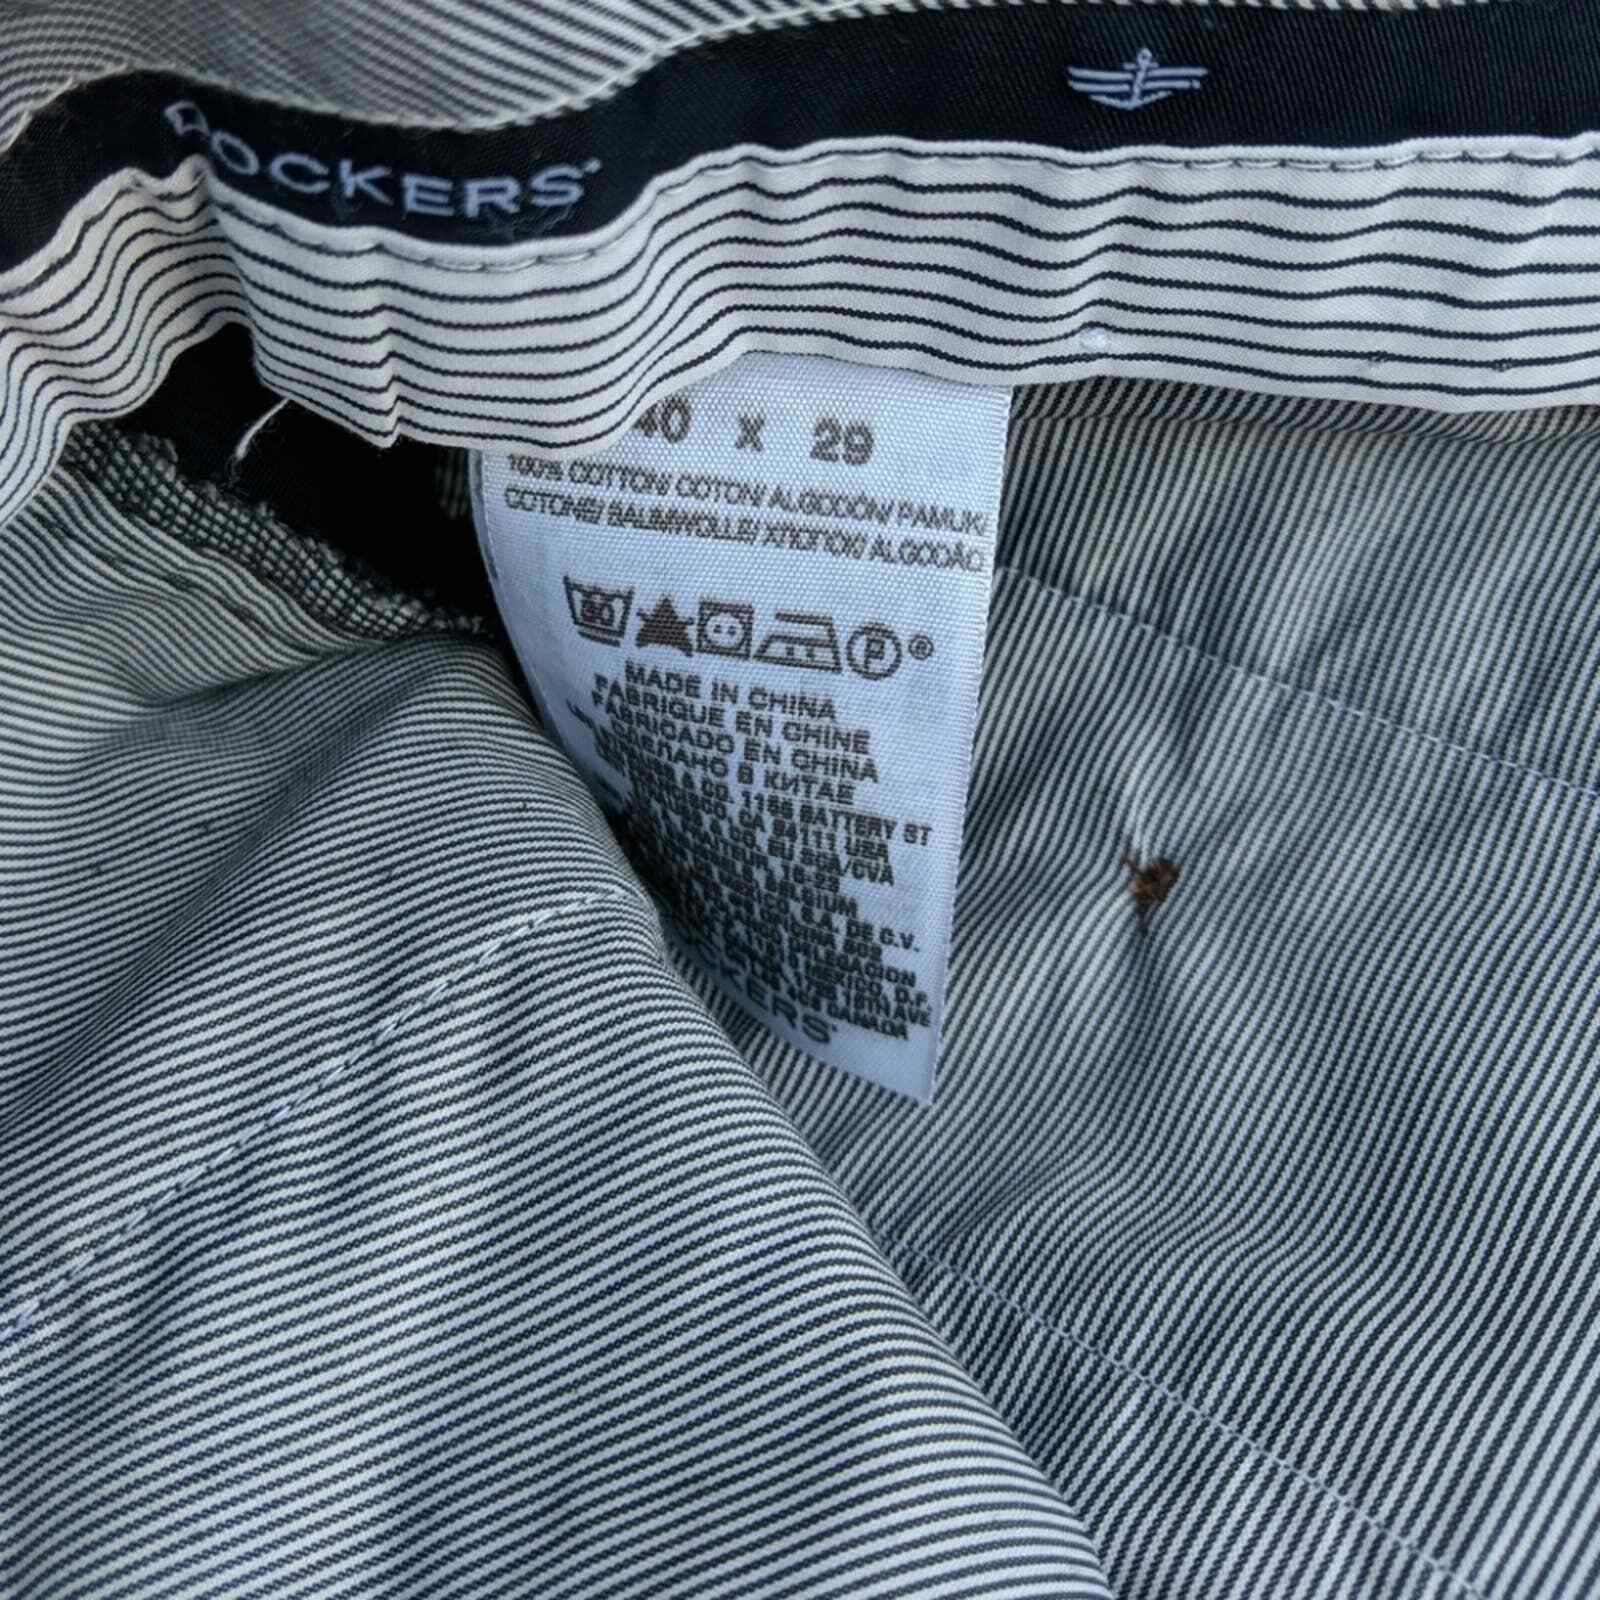 Dockers men's navy classic fit trouser pants 40/2… - image 4